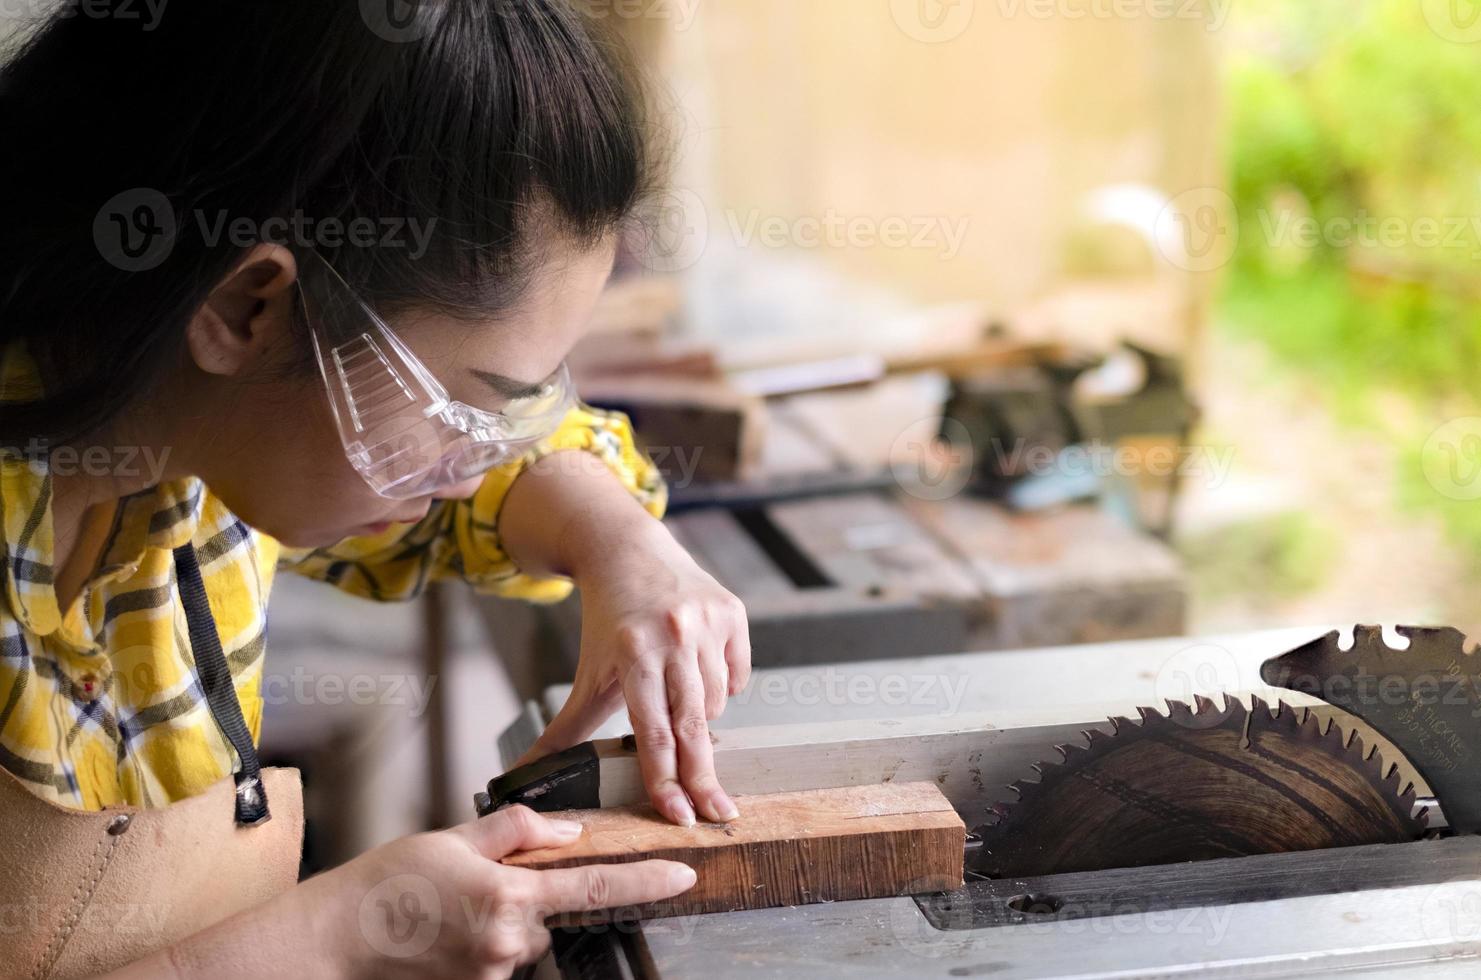 vrouw is ambachtelijk bezig hout te snijden met cirkelzagen elektrisch gereedschap foto